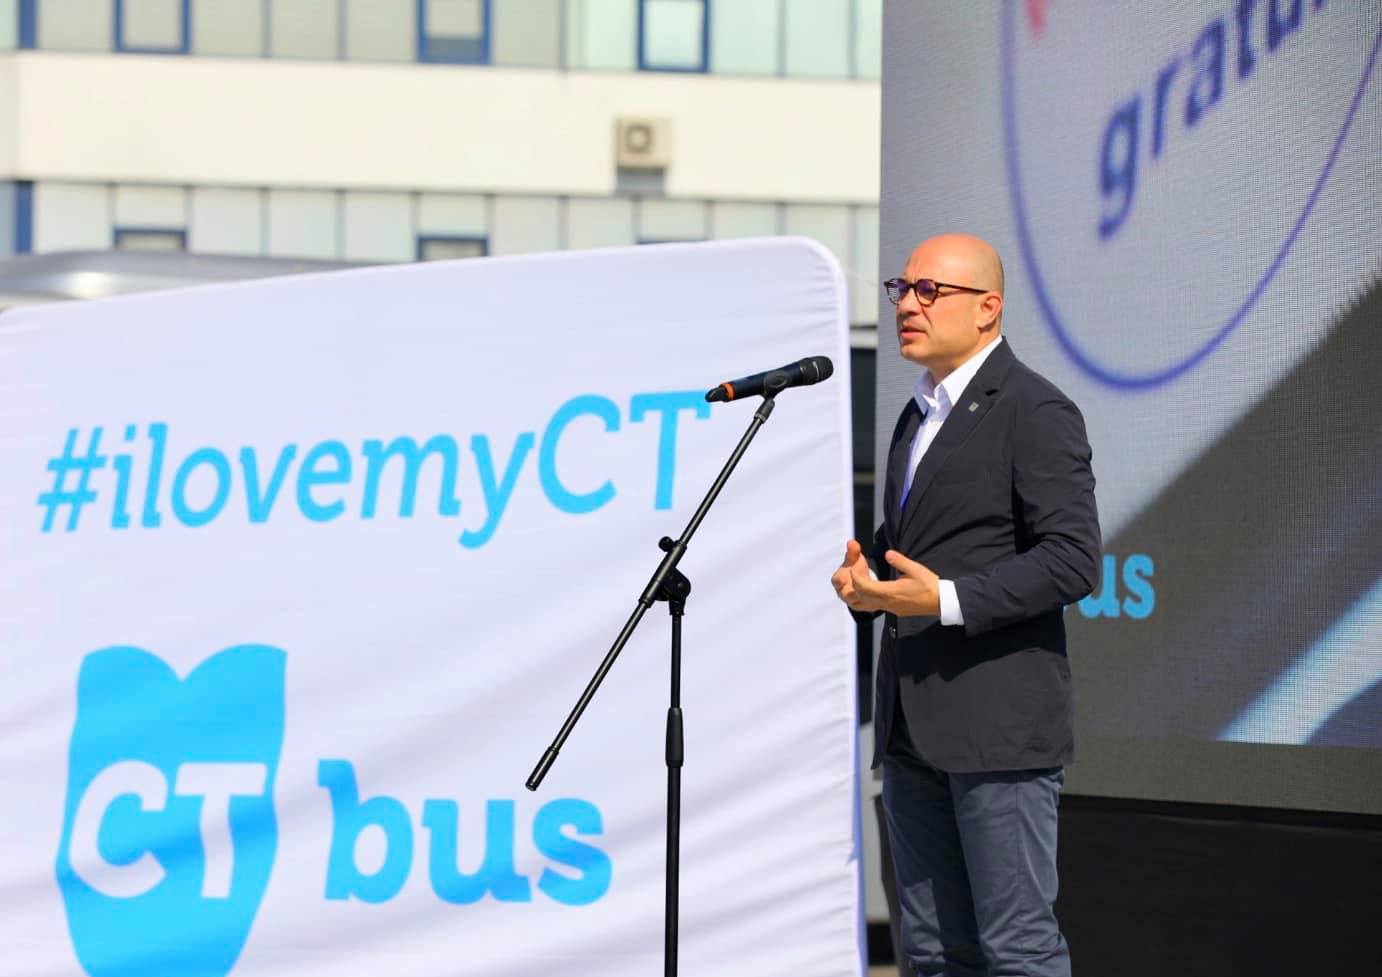 EXCLUSIV Bogdan Niță și-a dat demisia din Consiliul de Administrație al CT BUS